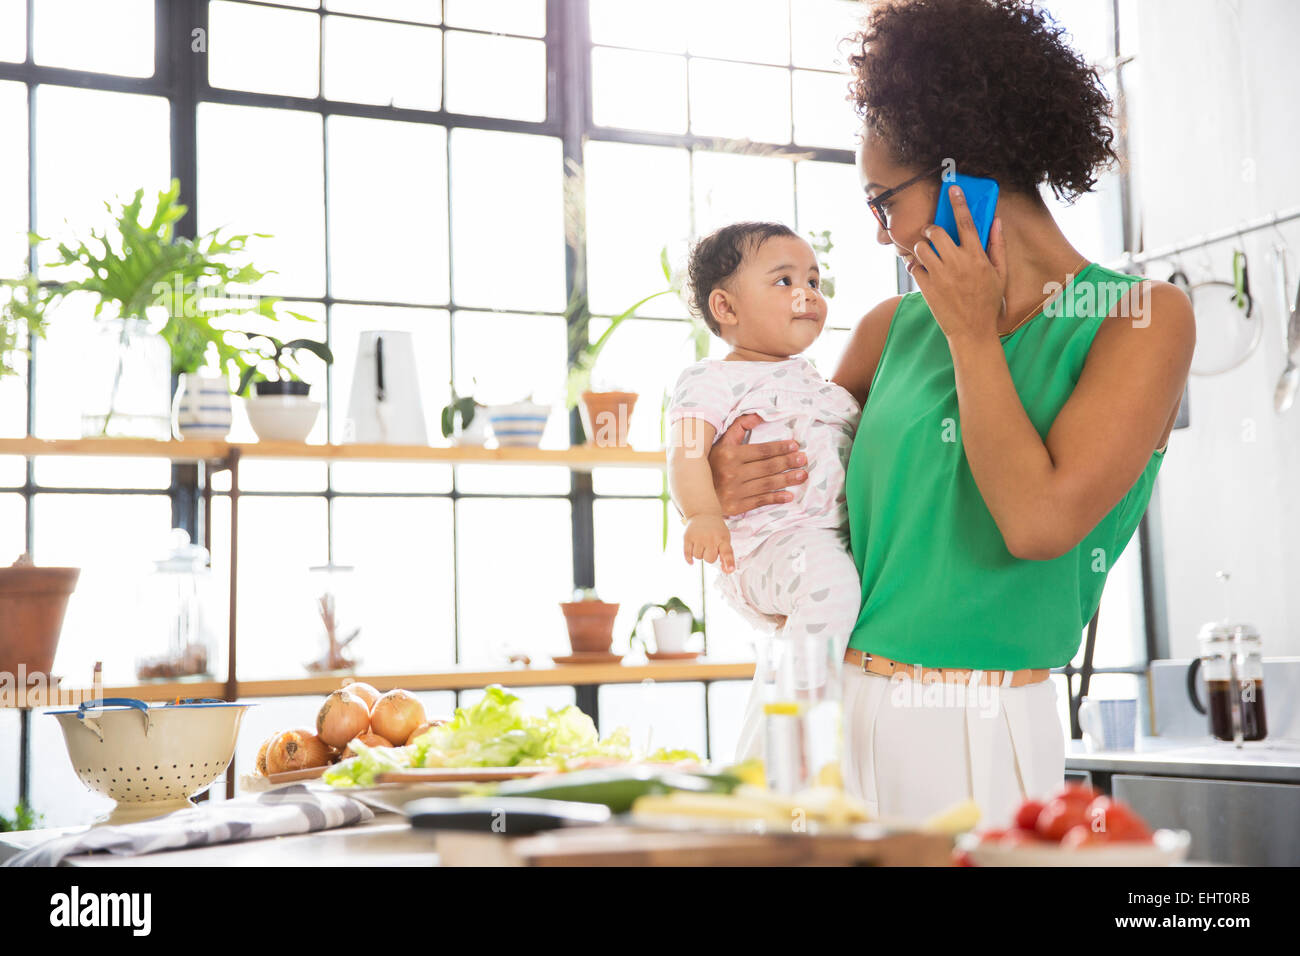 Mutter ihre kleine Tochter zu halten, während mit Handy in Küche Stockfoto